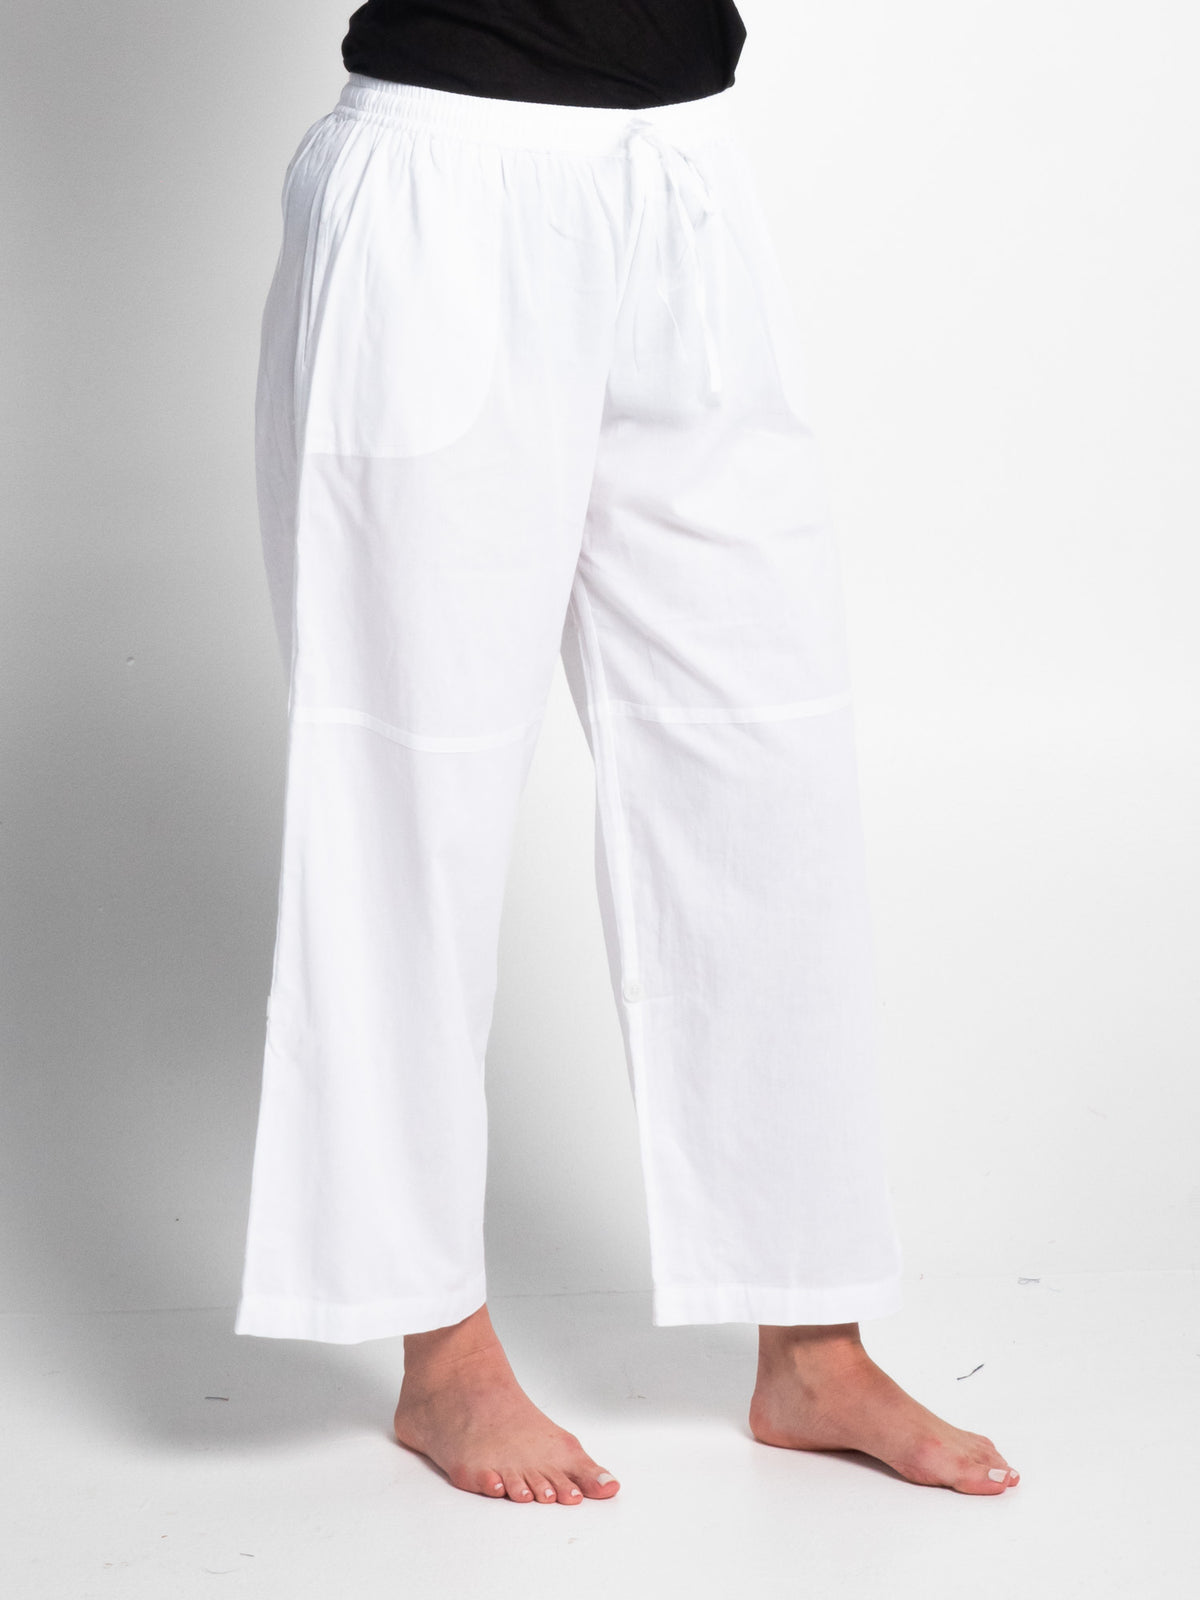 Sorrento White Cotton Pants